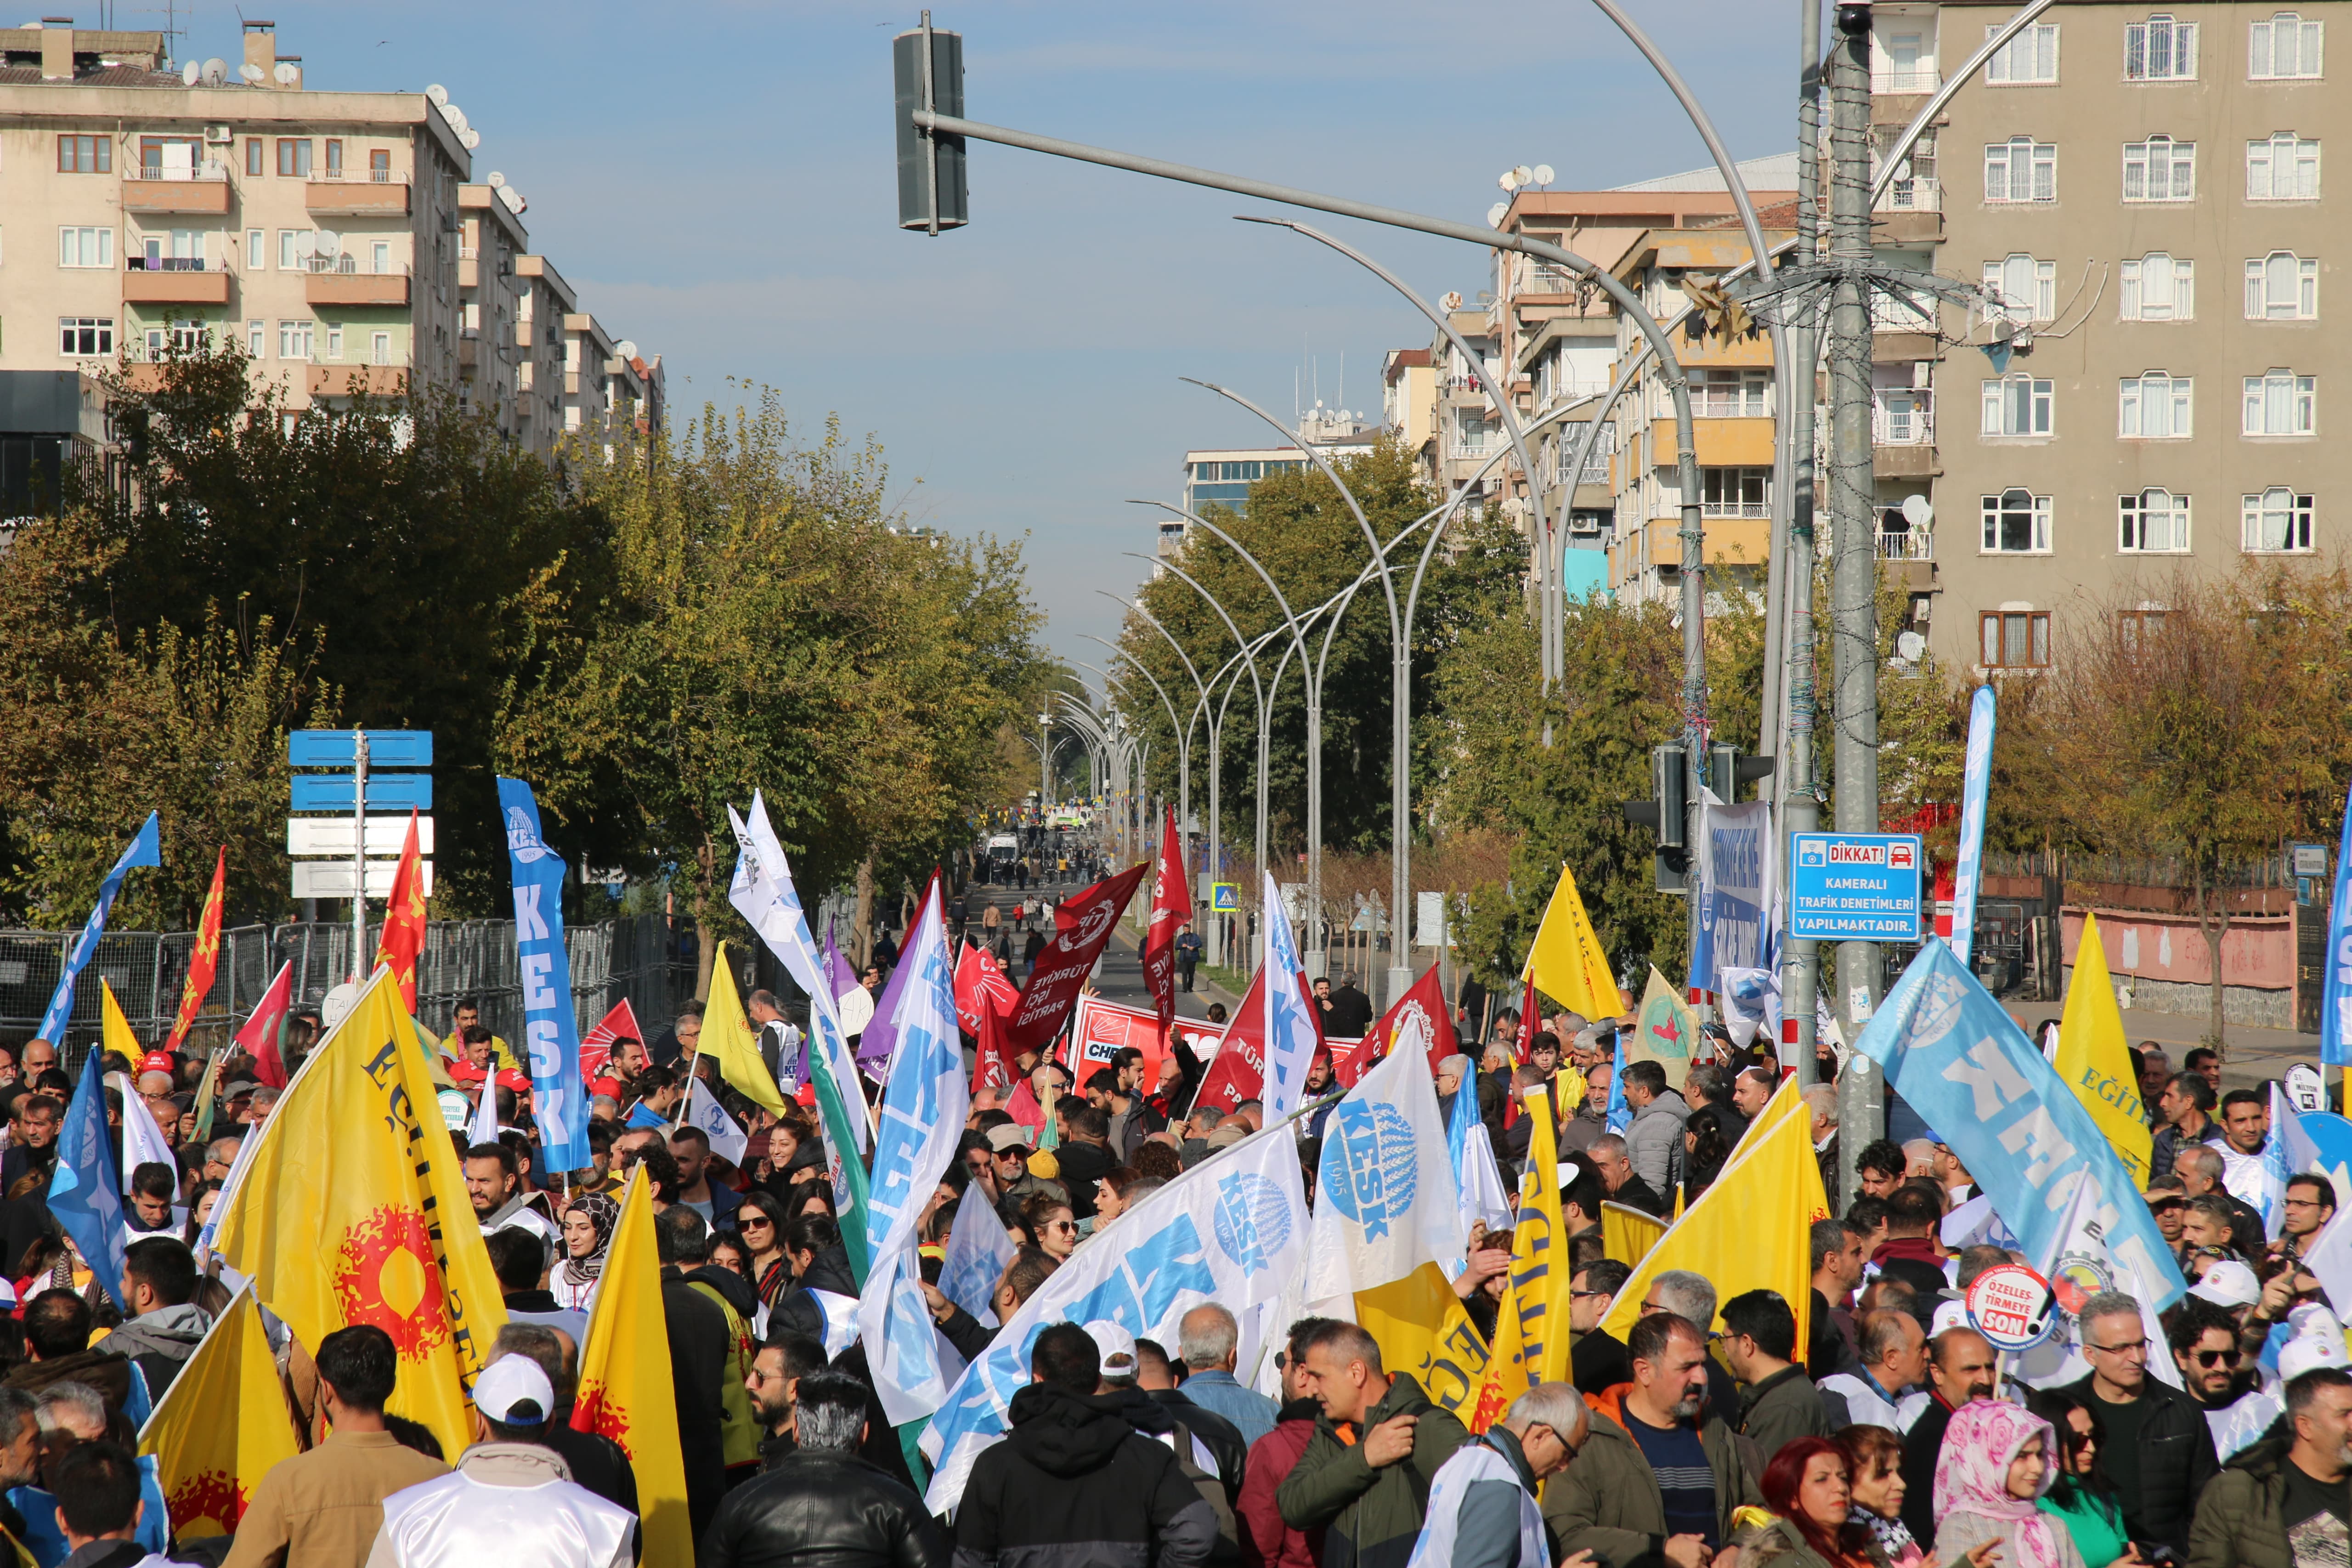 KESK Diyarbakır mitingi: Savaşa değil halka bütçe